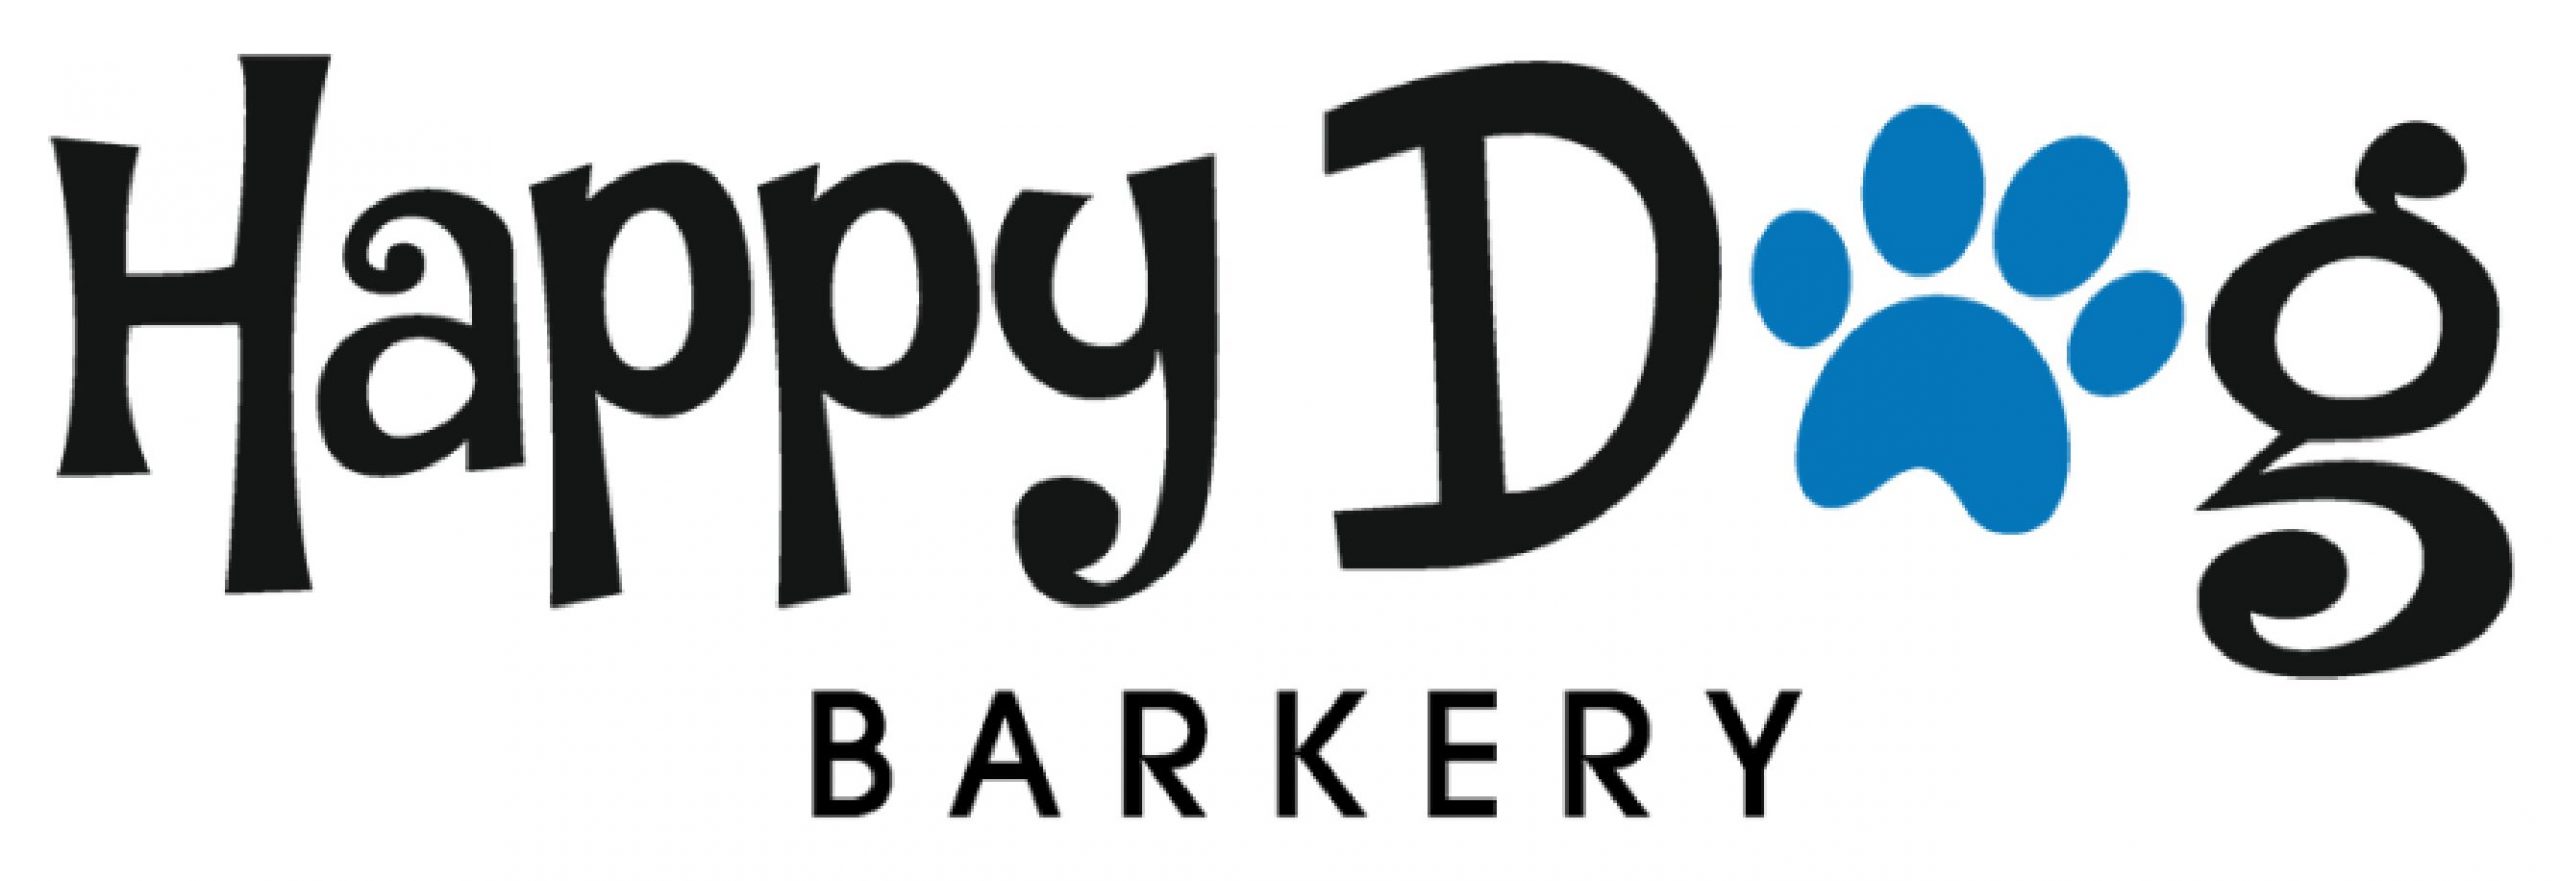 Happy Dog Barkery